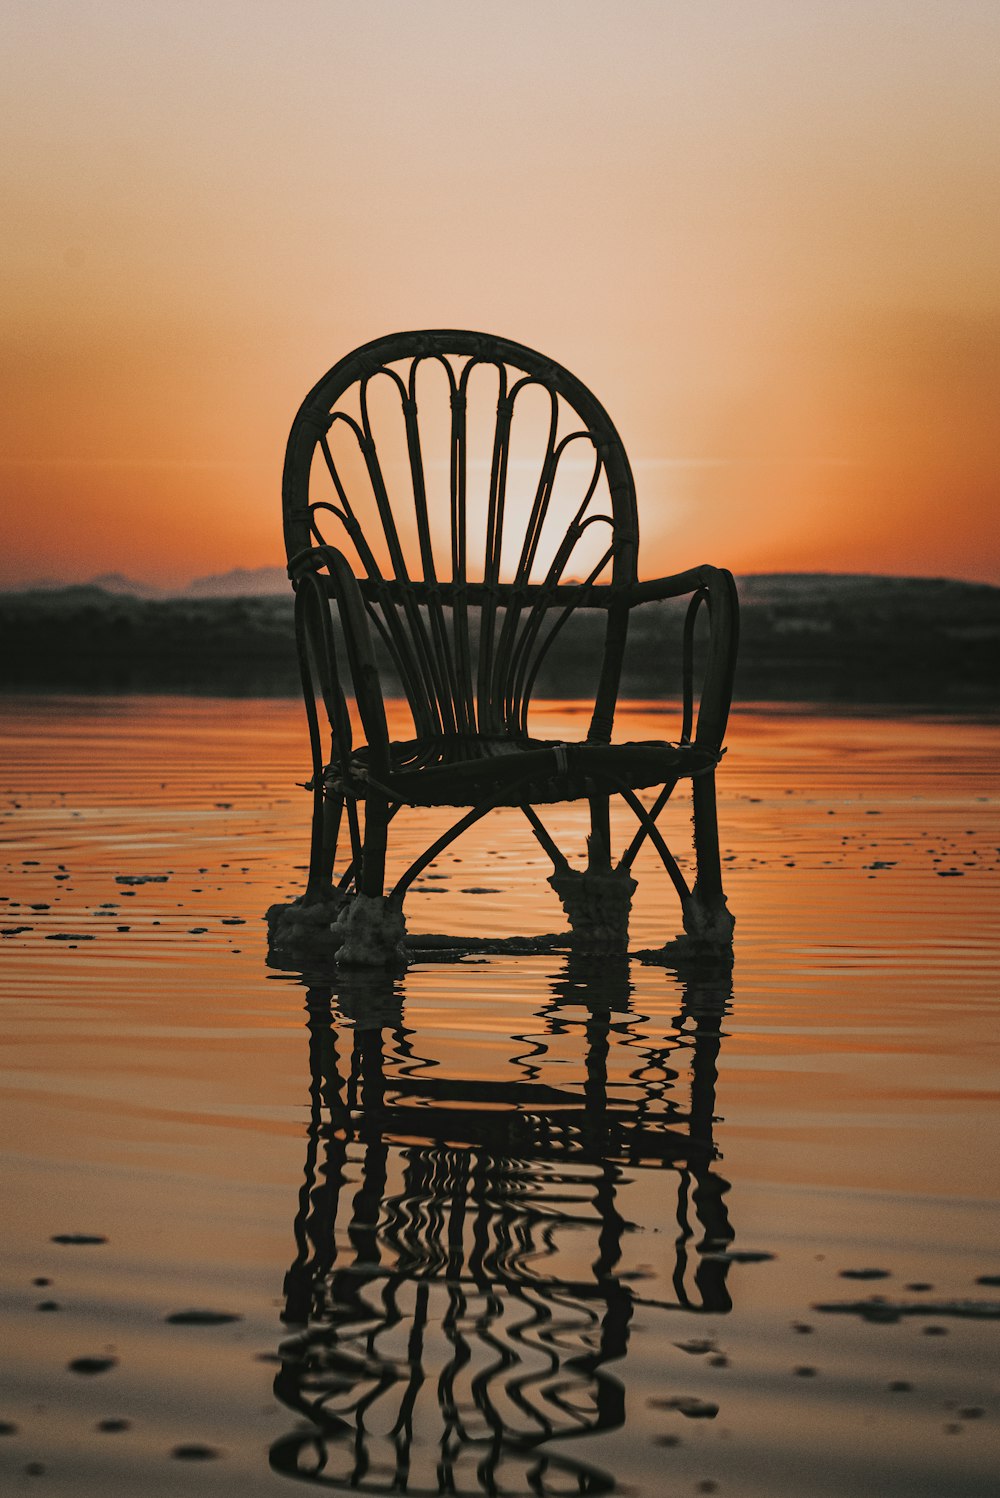 Silueta de silla de madera en la playa durante la puesta del sol